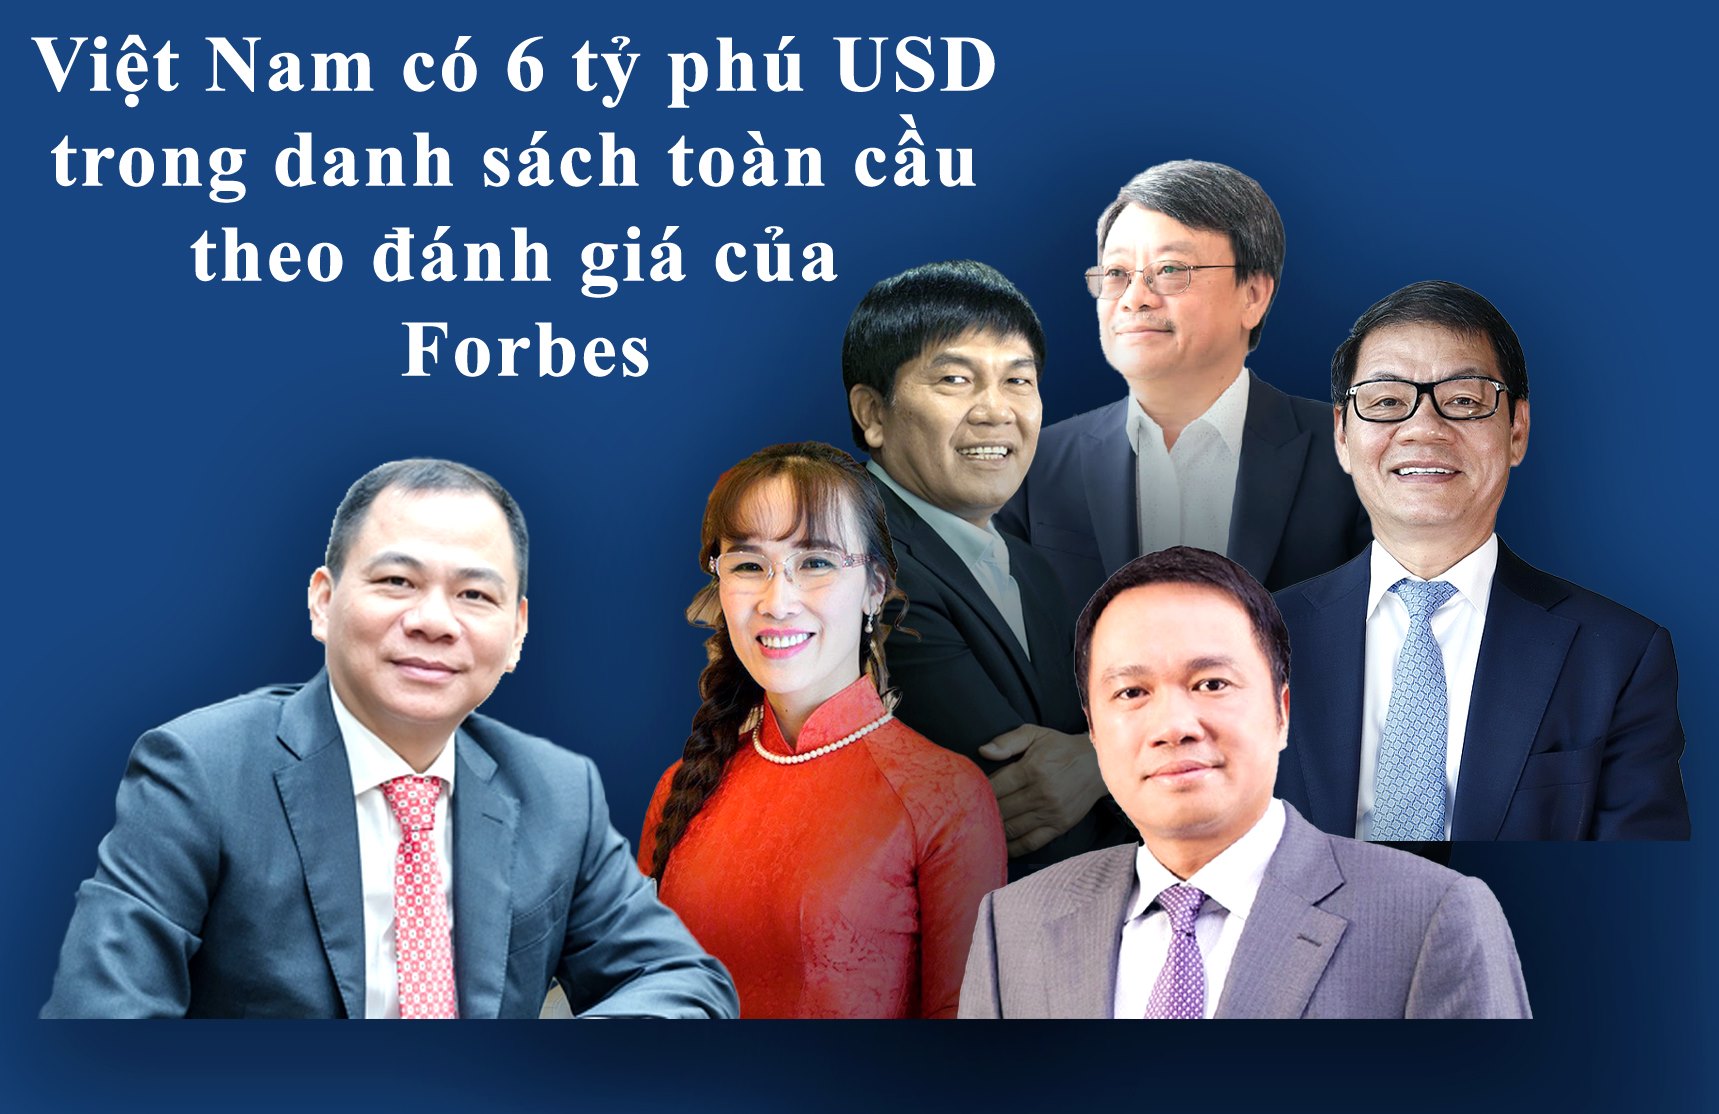 50 Doanh nhân giàu nhất Việt Nam theo xếp hạng của tạp chí Forbes